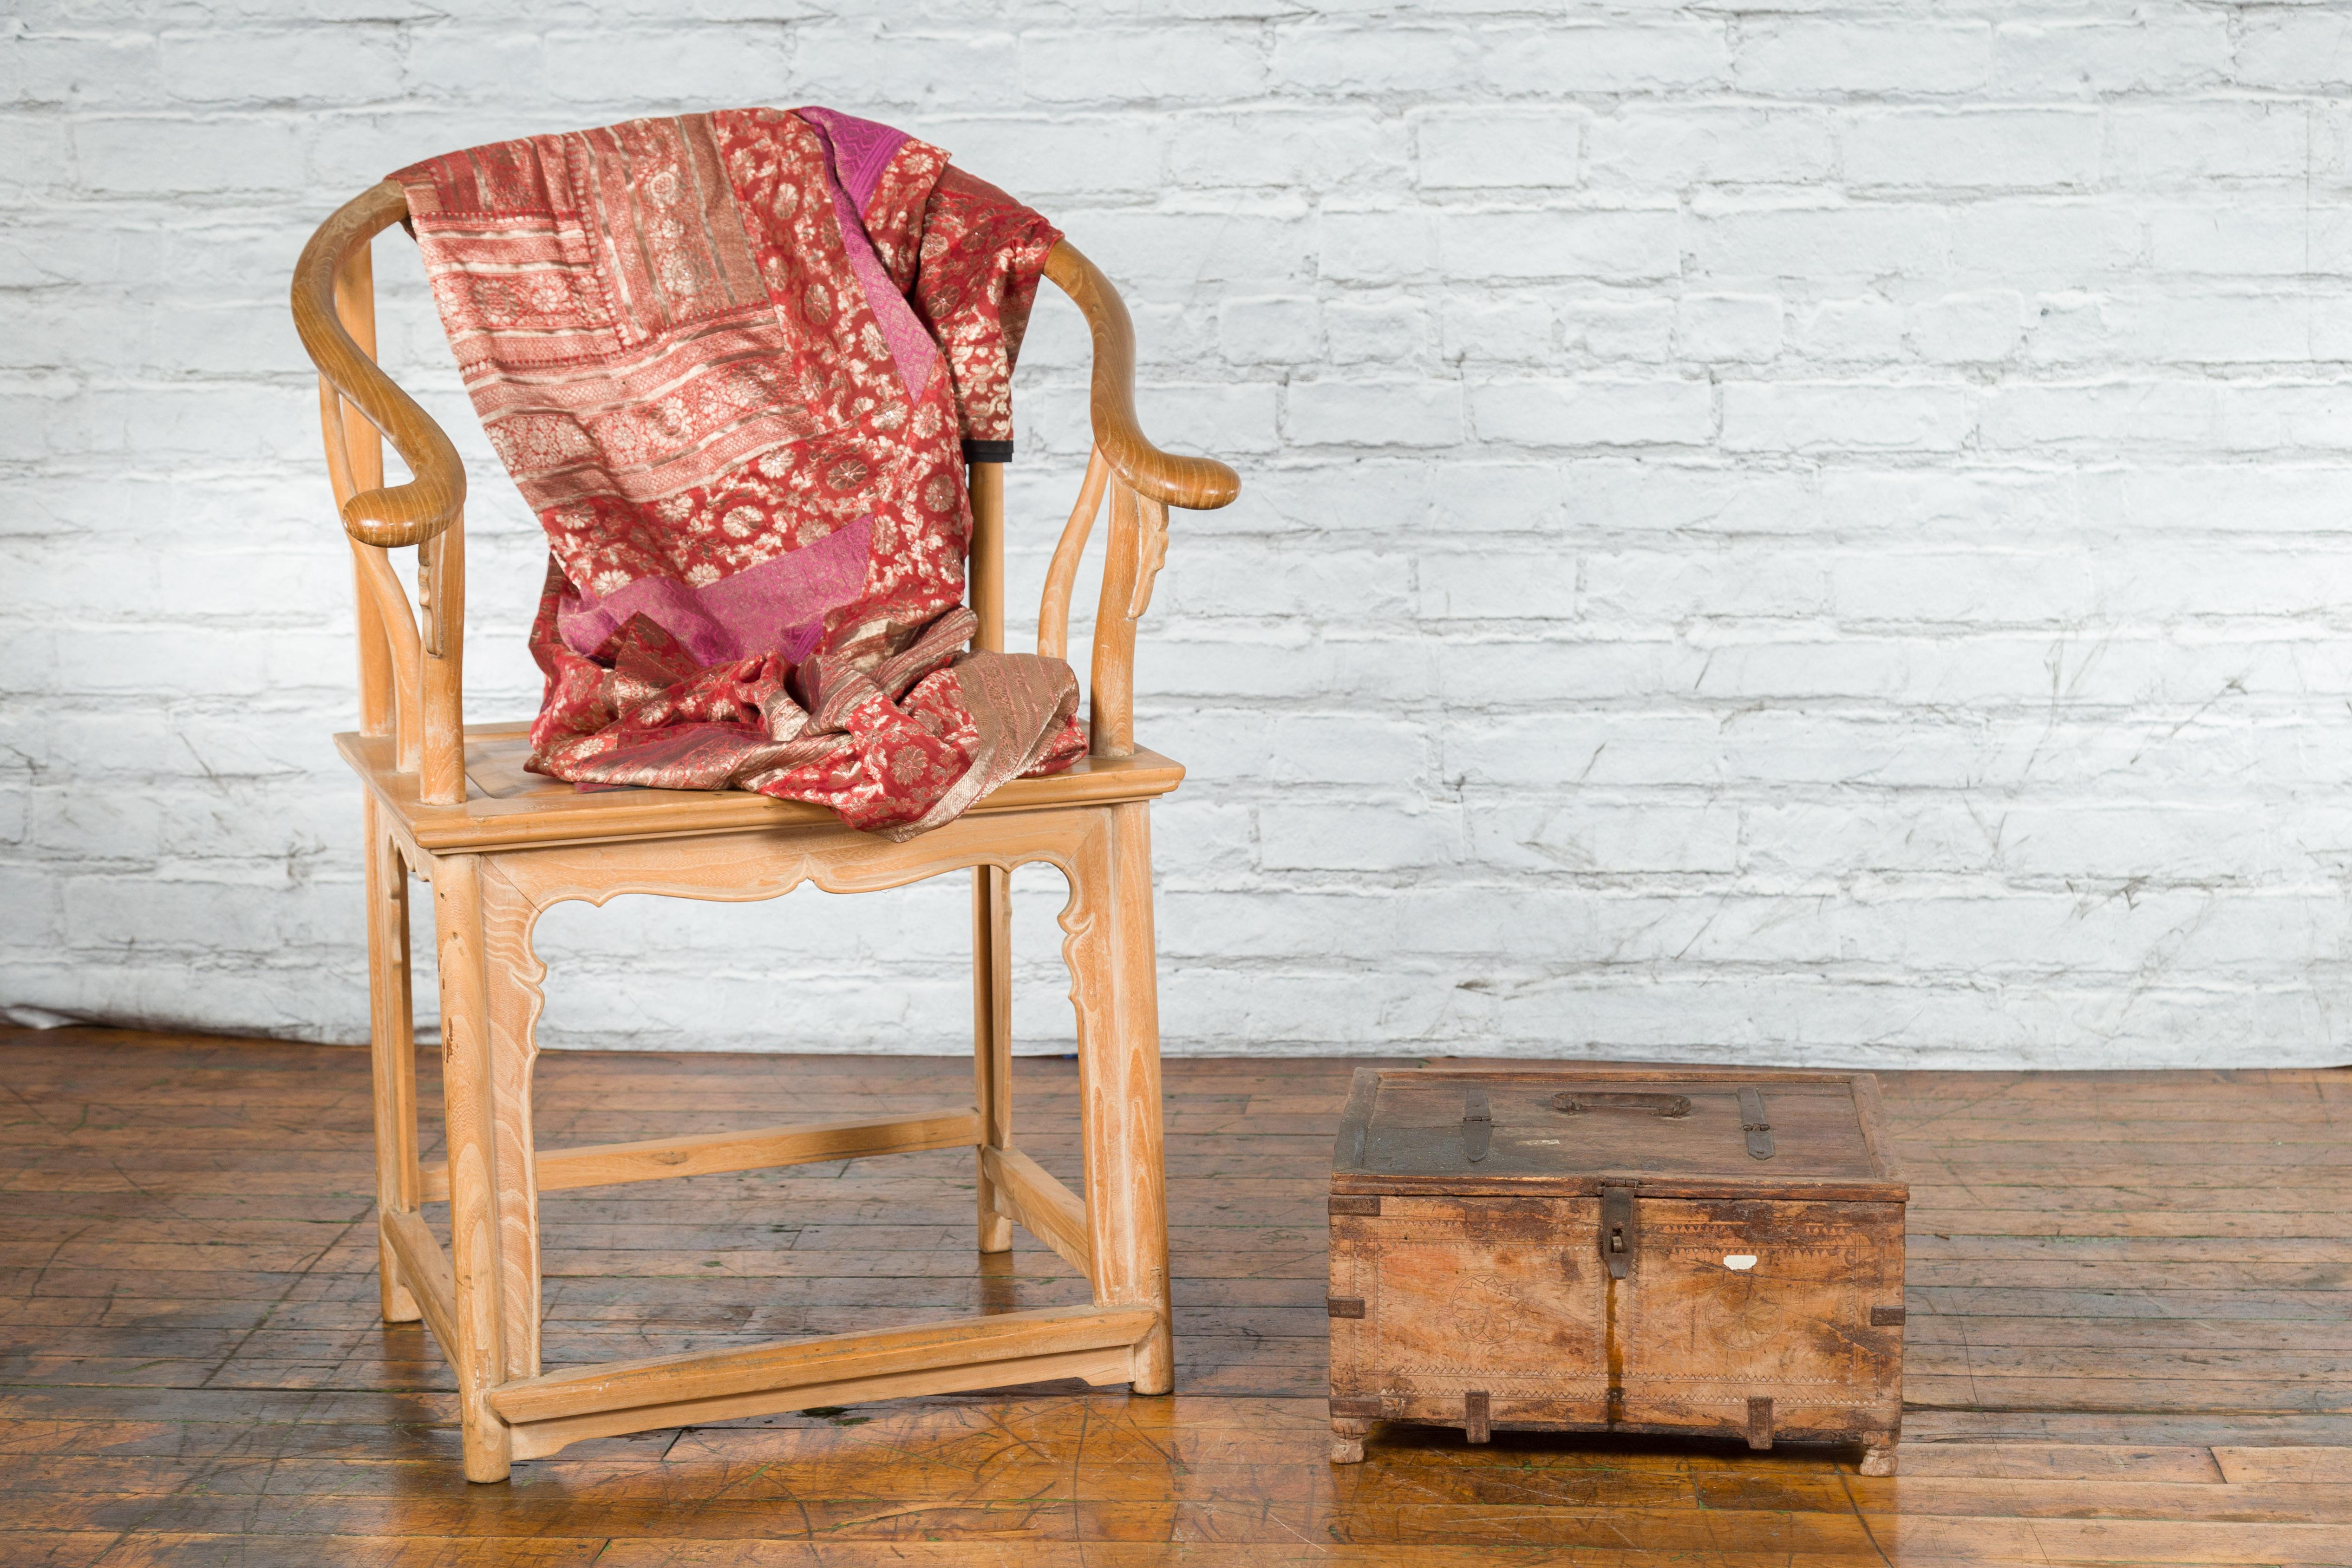 Boîte à trésors indienne rustique en bois ancien du 19e siècle, avec des supports en fer, des rosettes sculptées et de petits pieds. Créée en Inde au cours du XIXe siècle, cette boîte en bois présente un couvercle rectangulaire avec une poignée